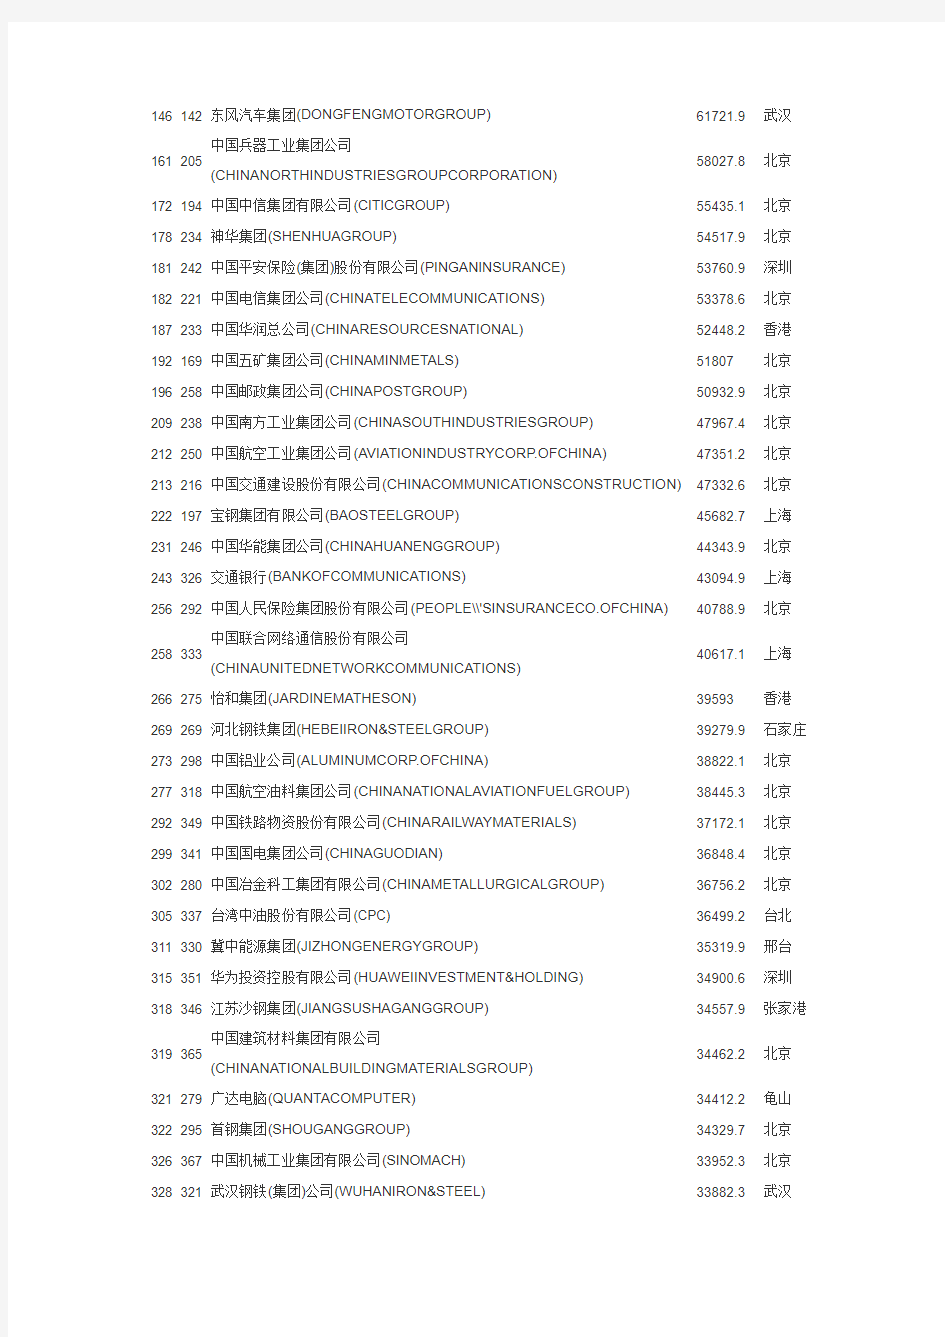 2013年世界500强中国企业榜单